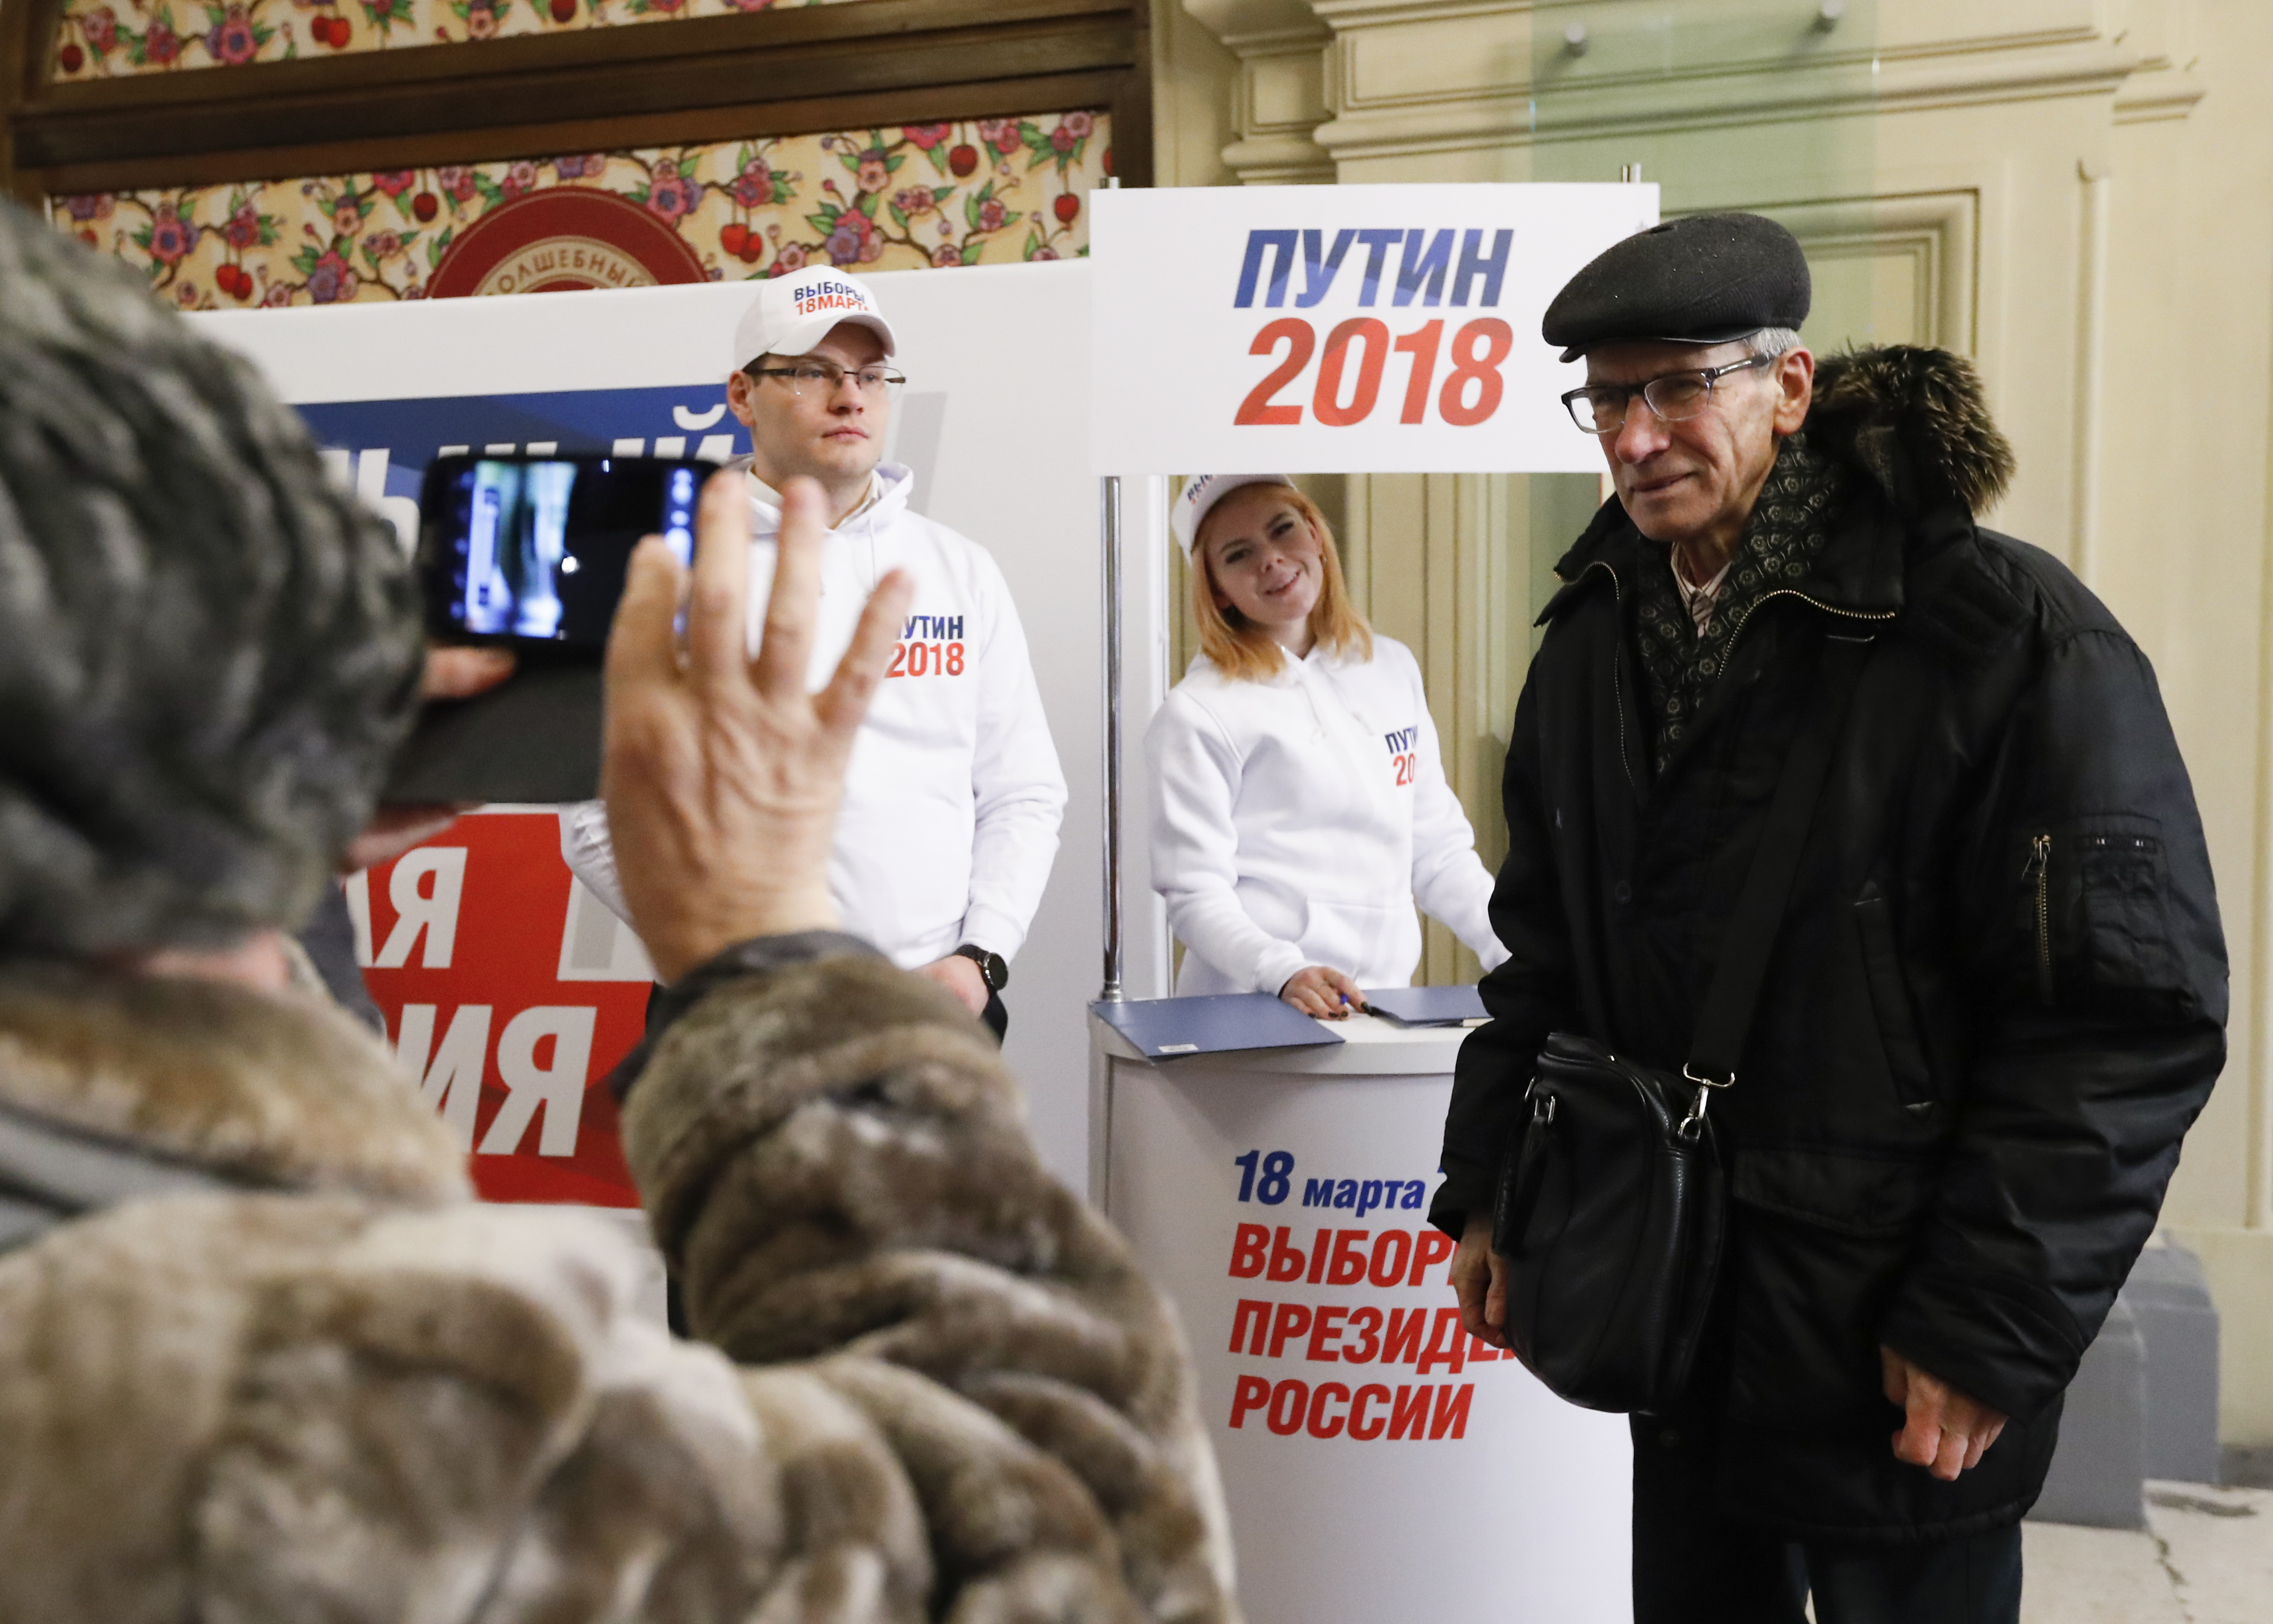 حملة لدعم الرئيصس الروسى فى الانتخابات الرئاسية